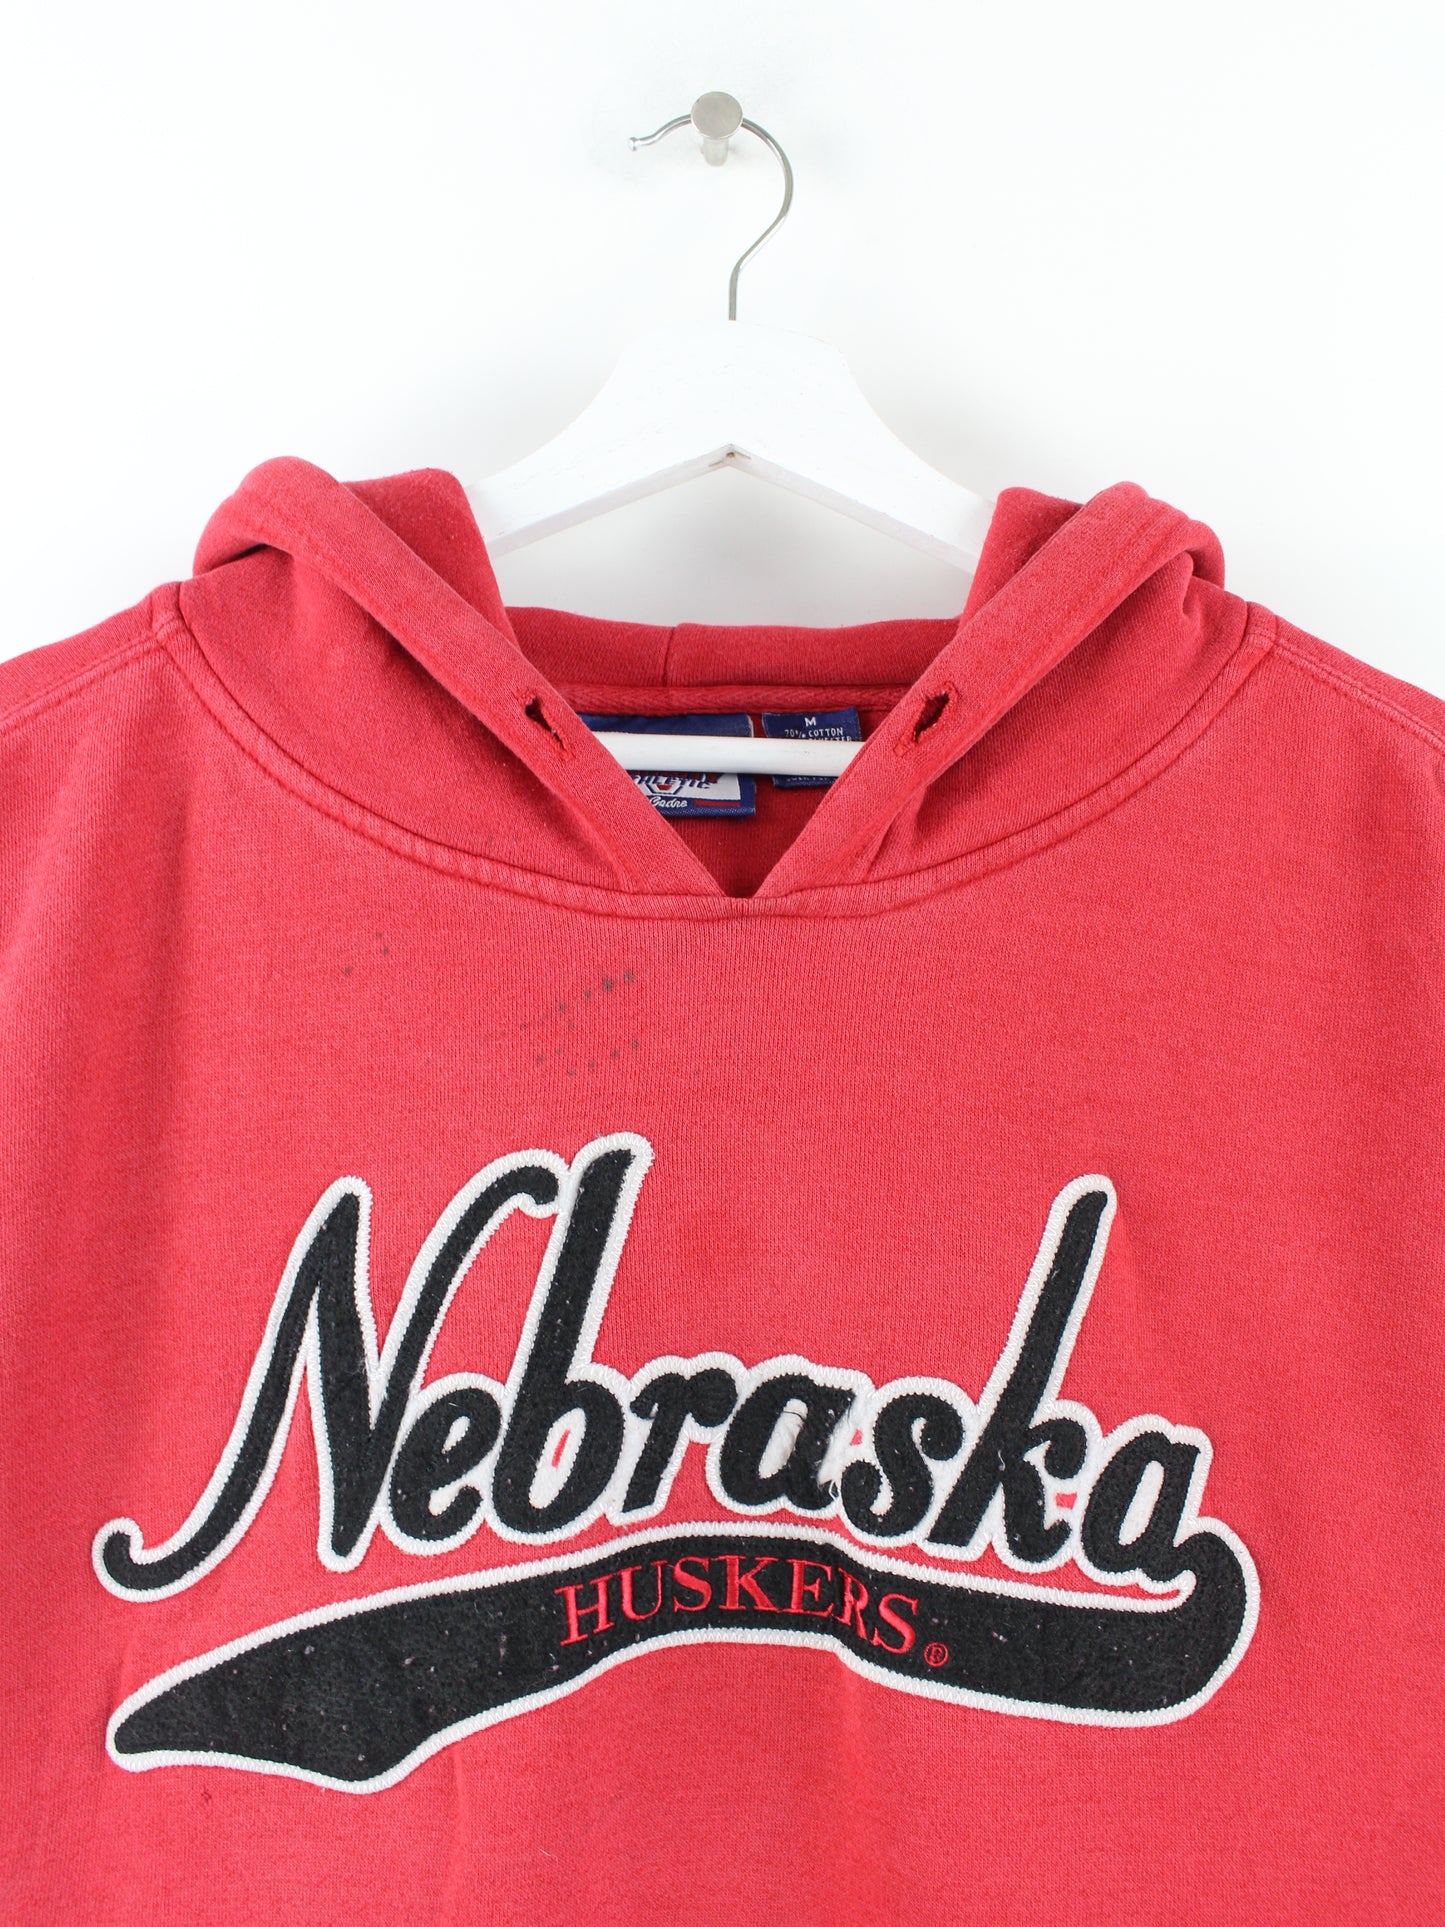 Vintage Nebraska Huskers Hoodie Red M